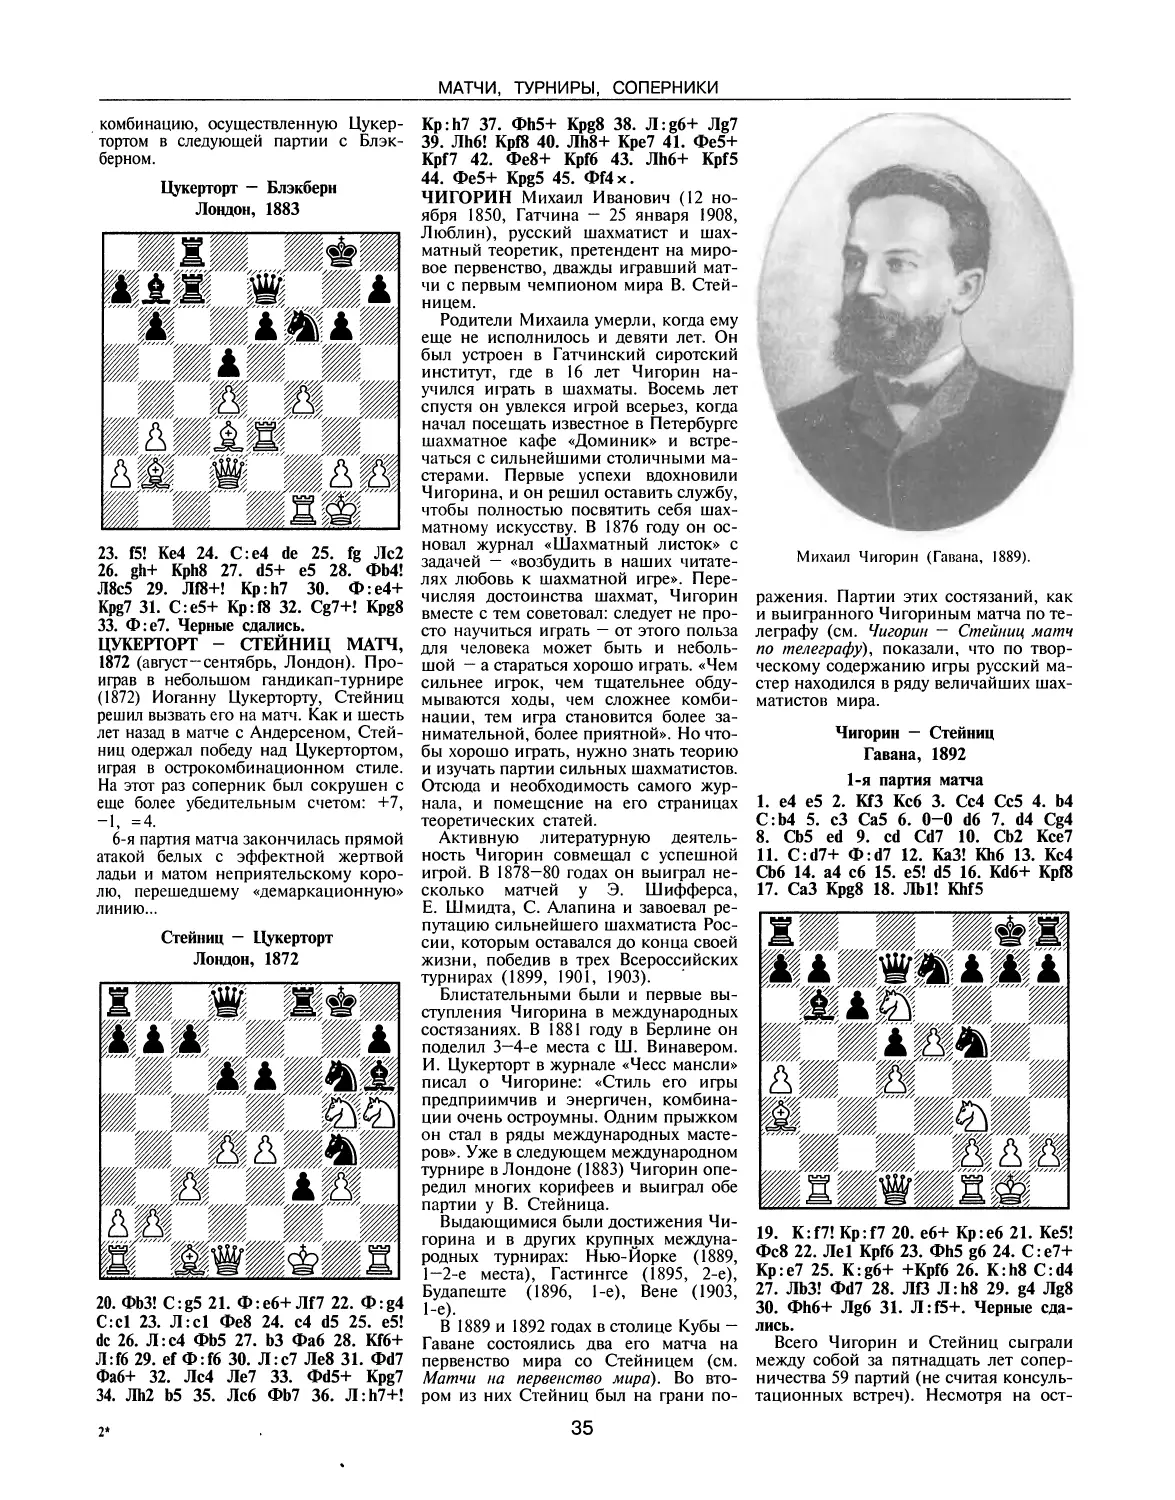 Цукерторт — Стейниц матч, 1872
Чигорин М.